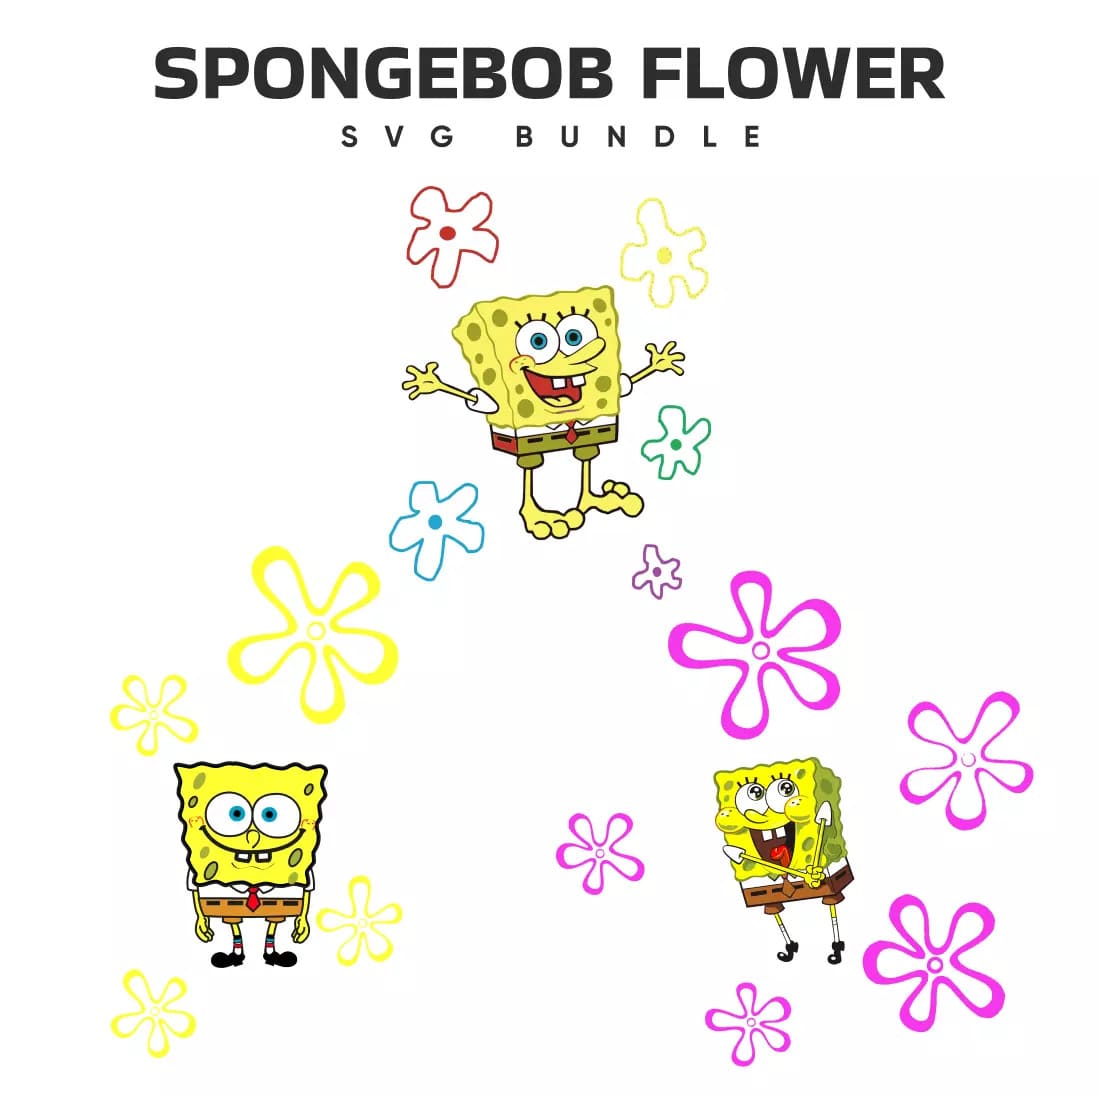 Spongebob Flower SVG Bundle Preview.